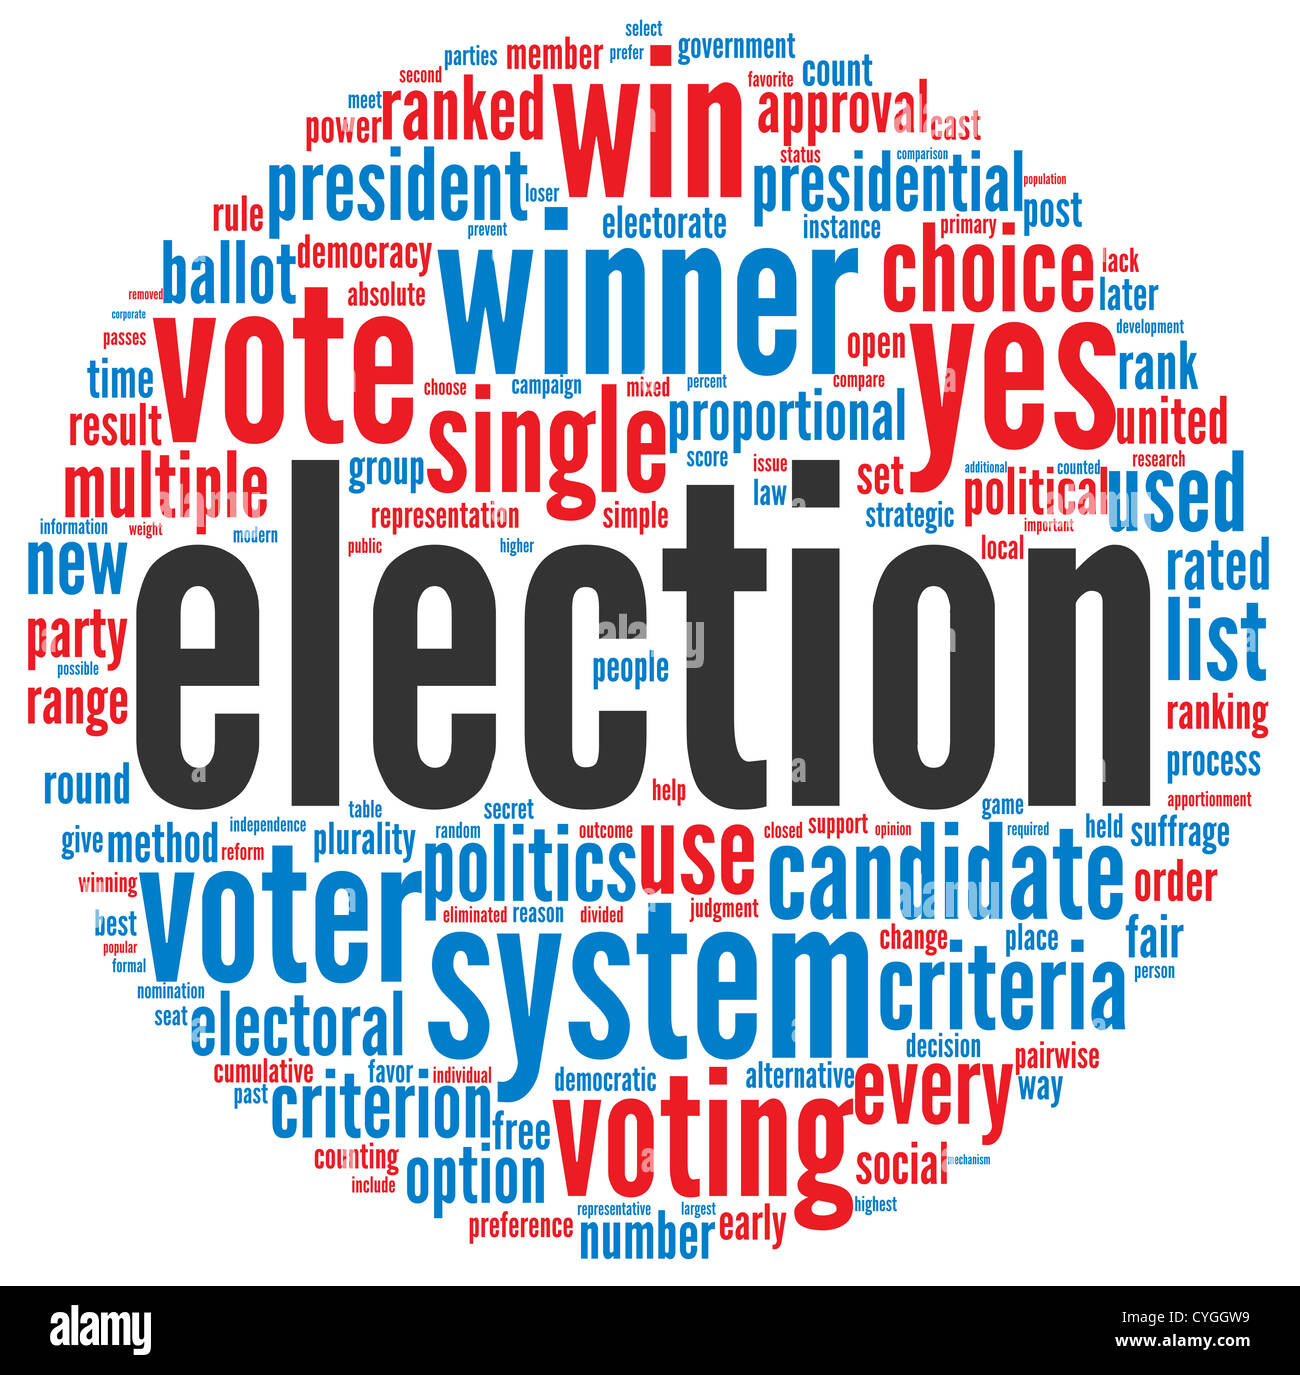 Vote result. Элекшен. Election Systems. Облако тегов в отдельных кружочках. Electoral System.